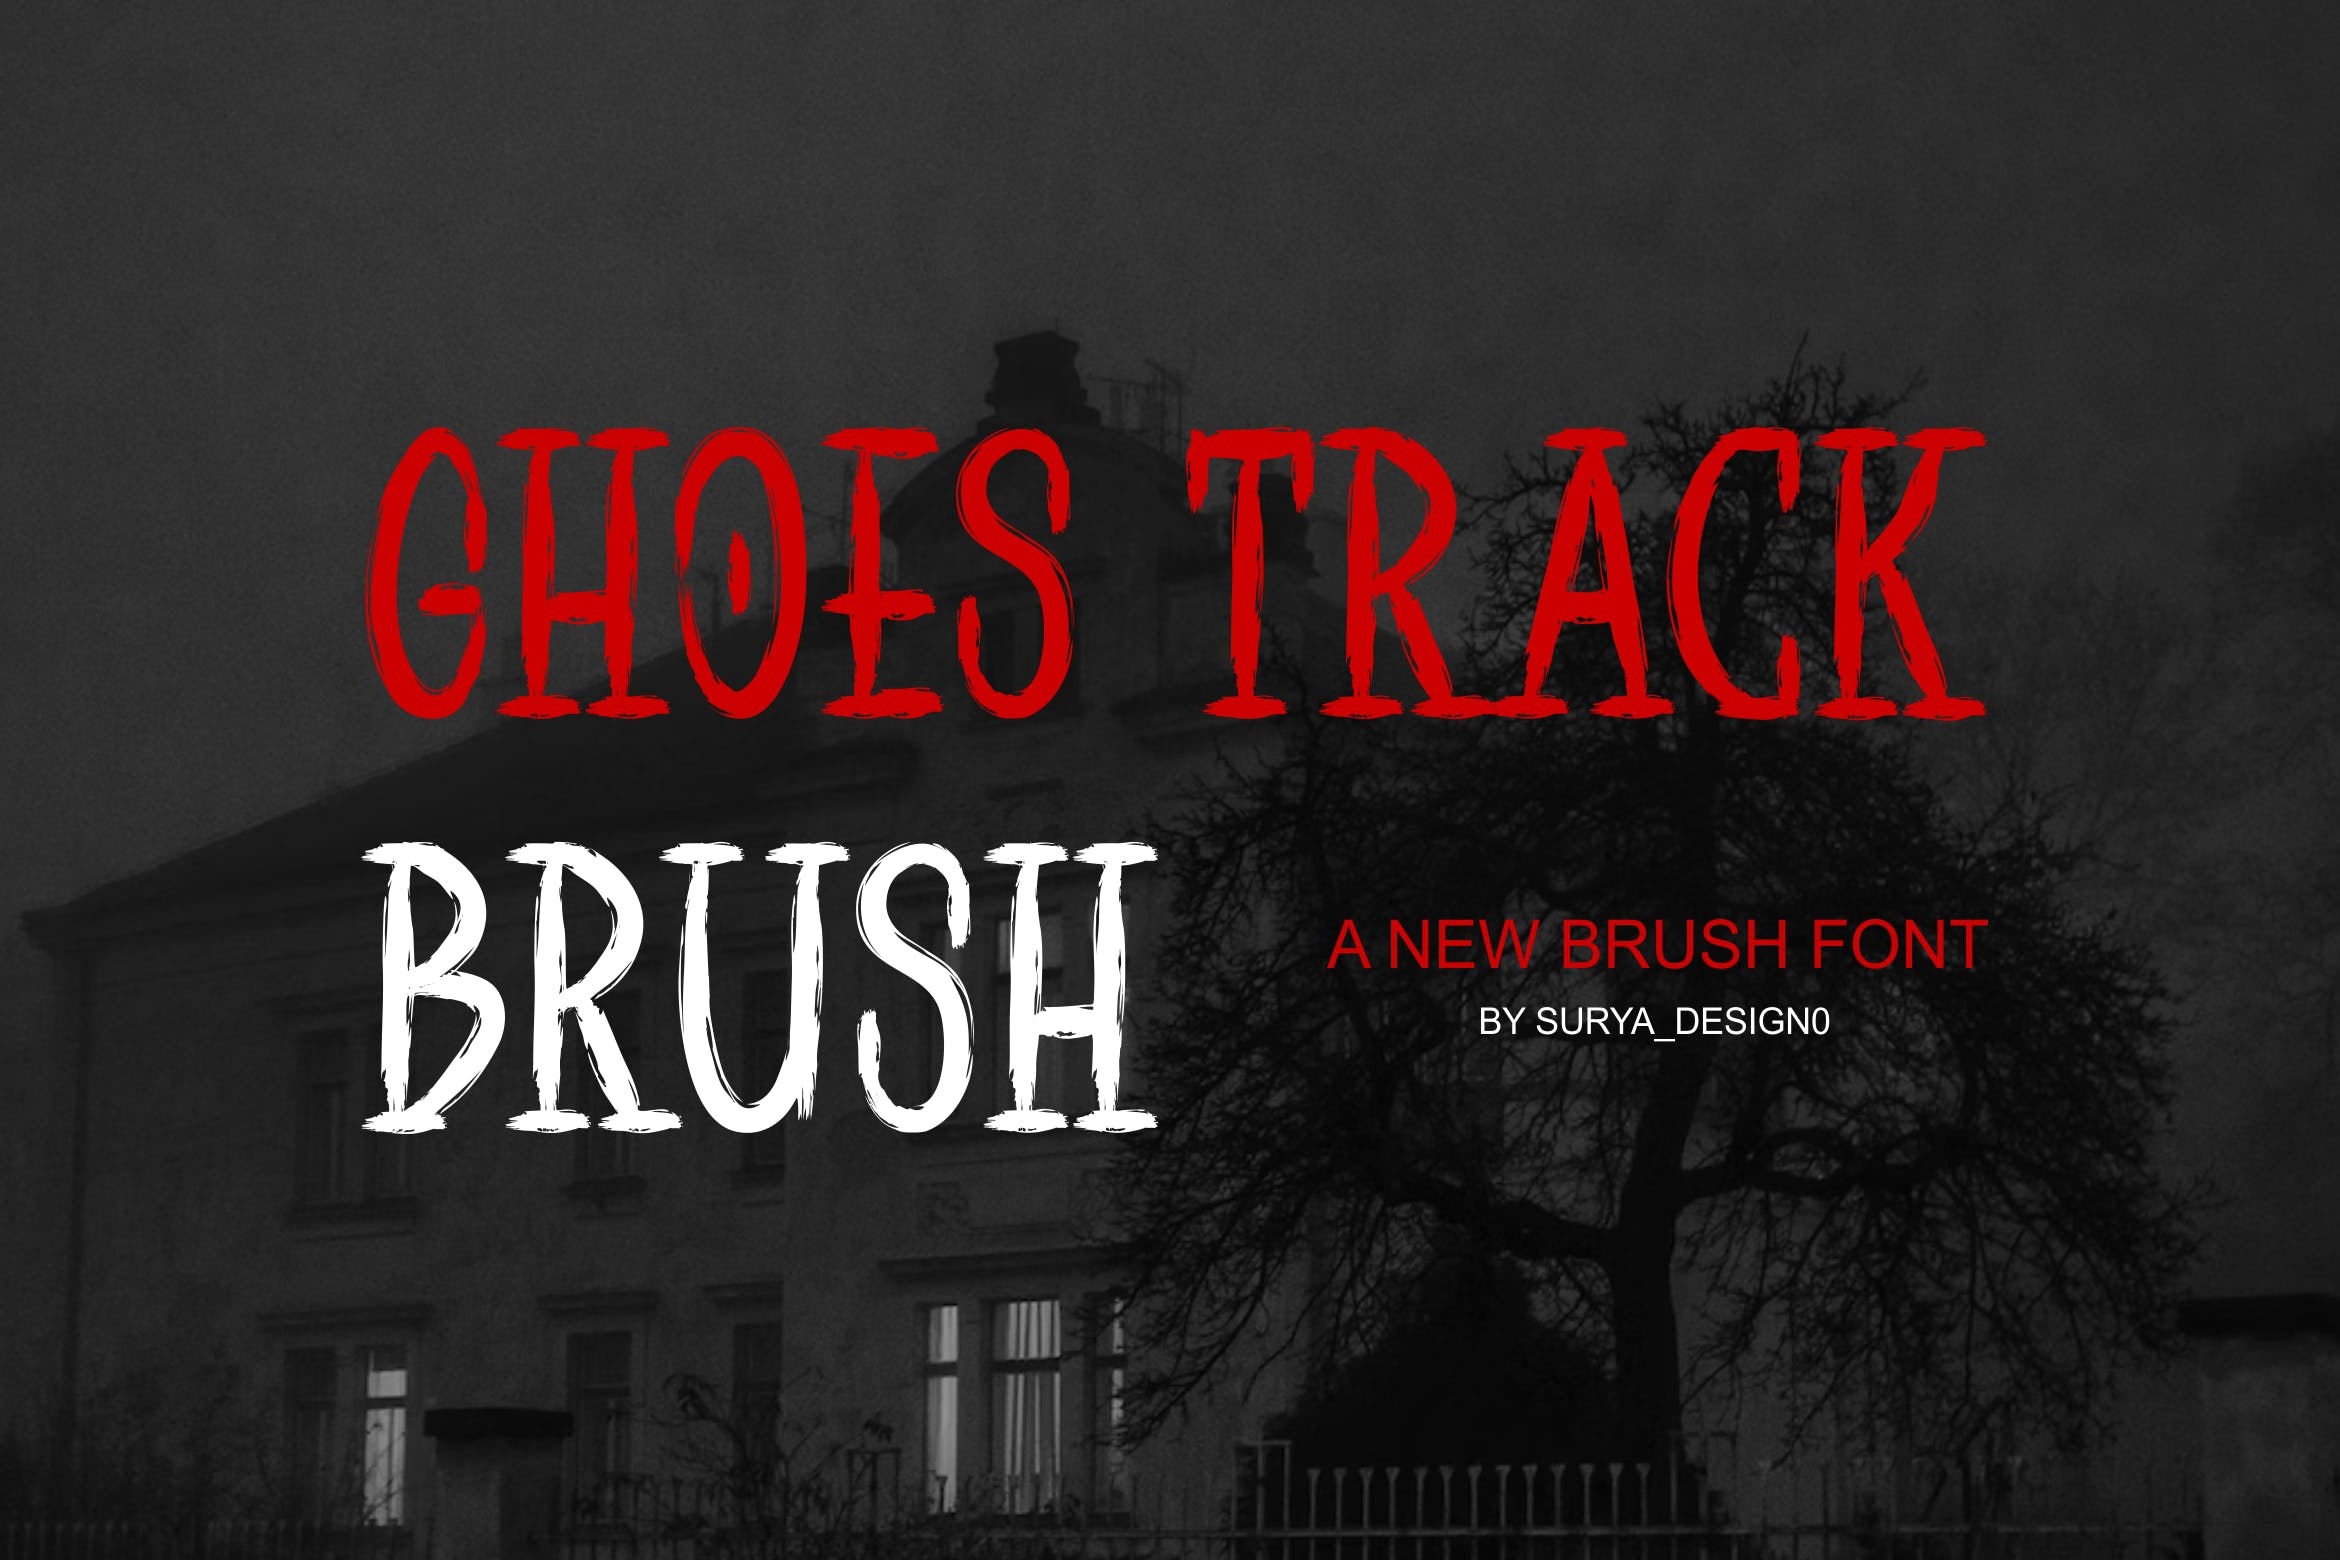 Beispiel einer Ghoes Track Brush-Schriftart